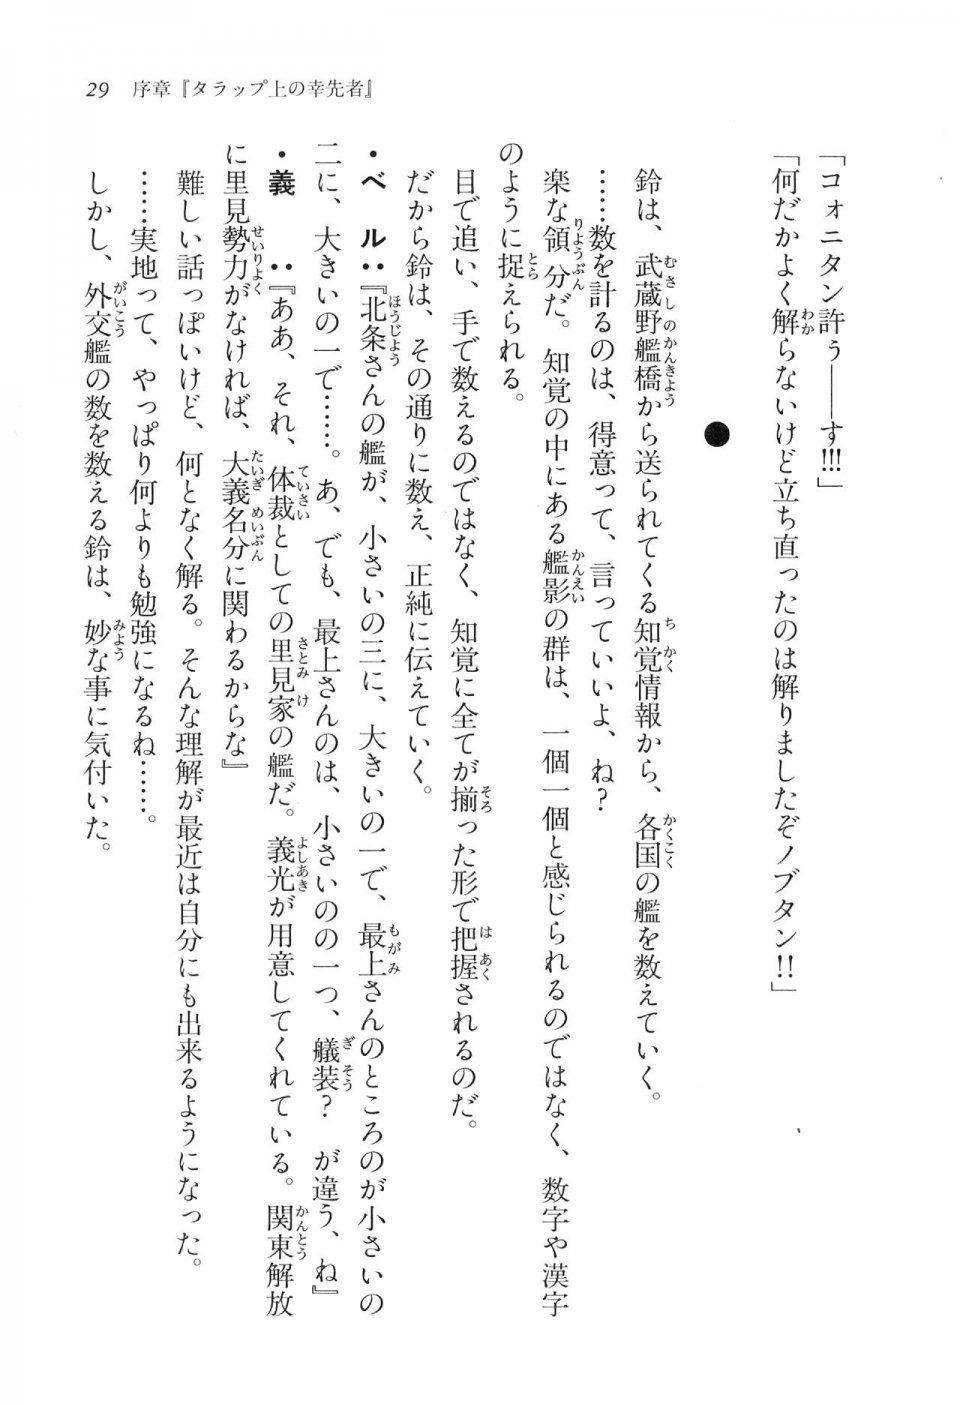 Kyoukai Senjou no Horizon LN Vol 16(7A) - Photo #29